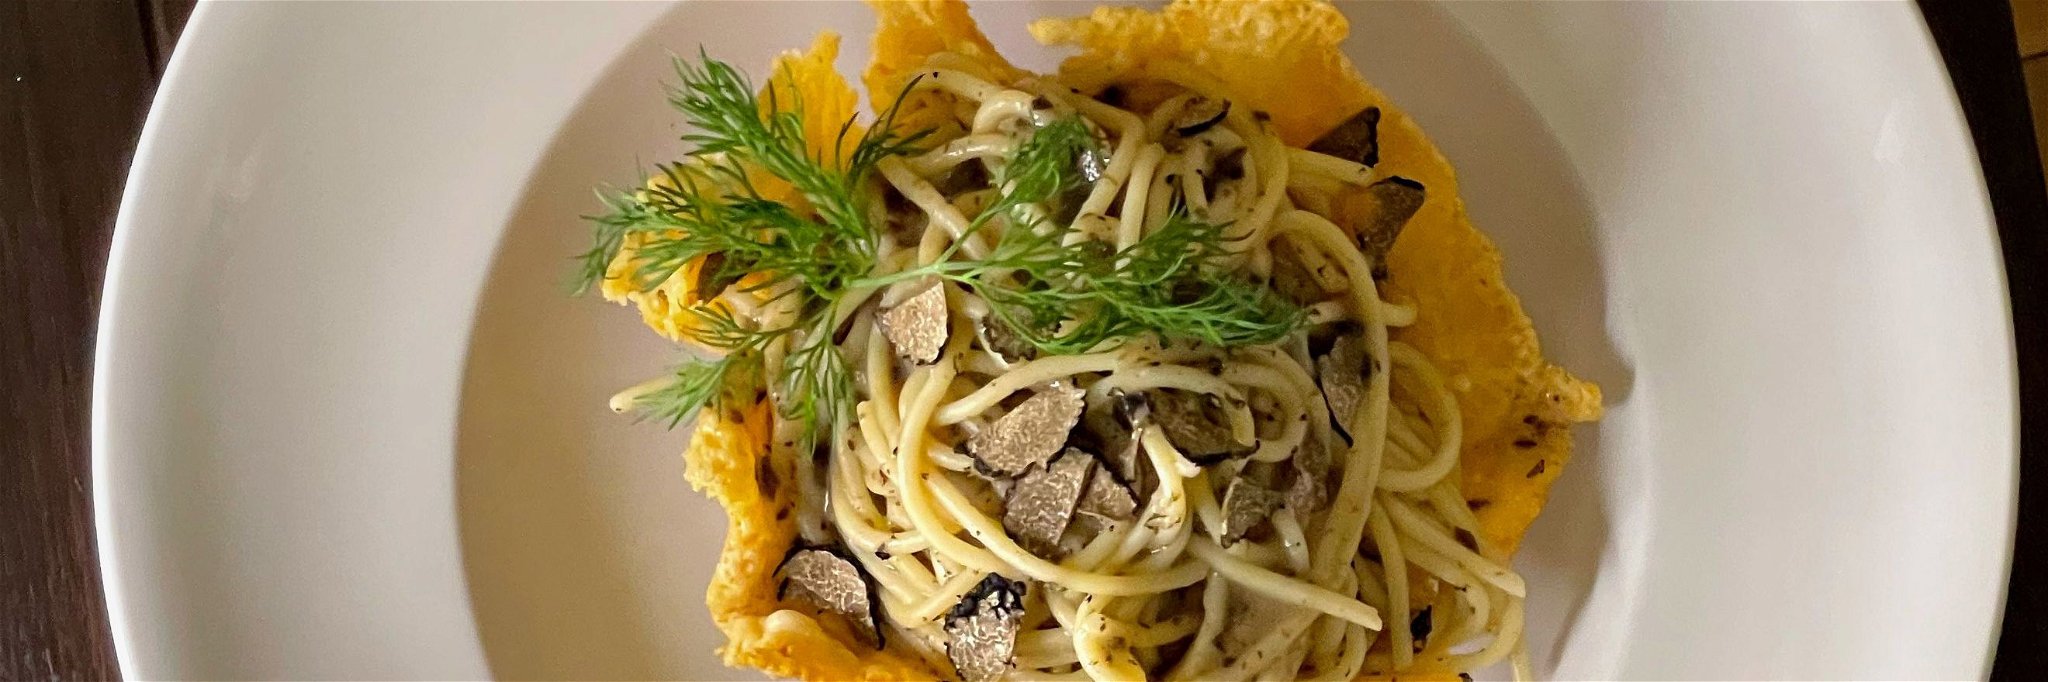 Auch ohne Fisch und Fleisch hat die italienische Küche einiges zu bieten.